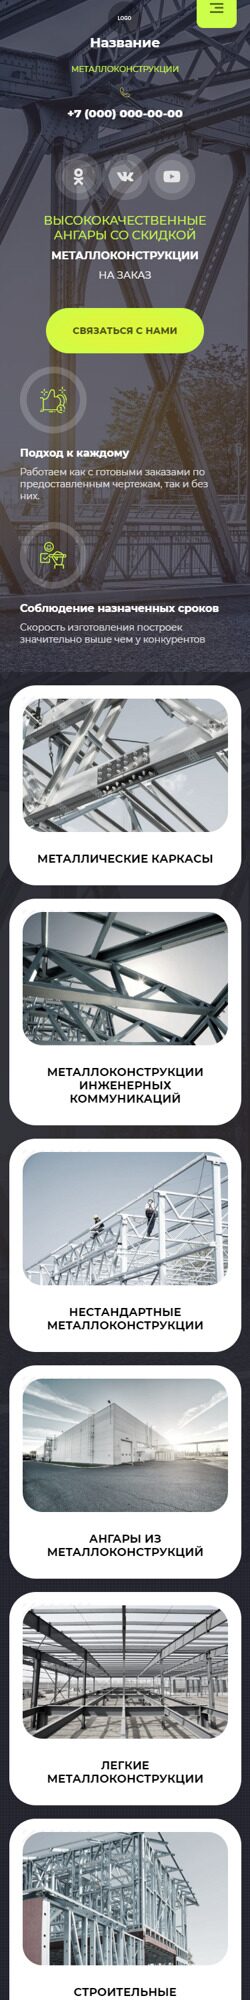 Готовый Сайт-Бизнес № 3942099 - Ангары и металлоконструкции (Мобильная версия)